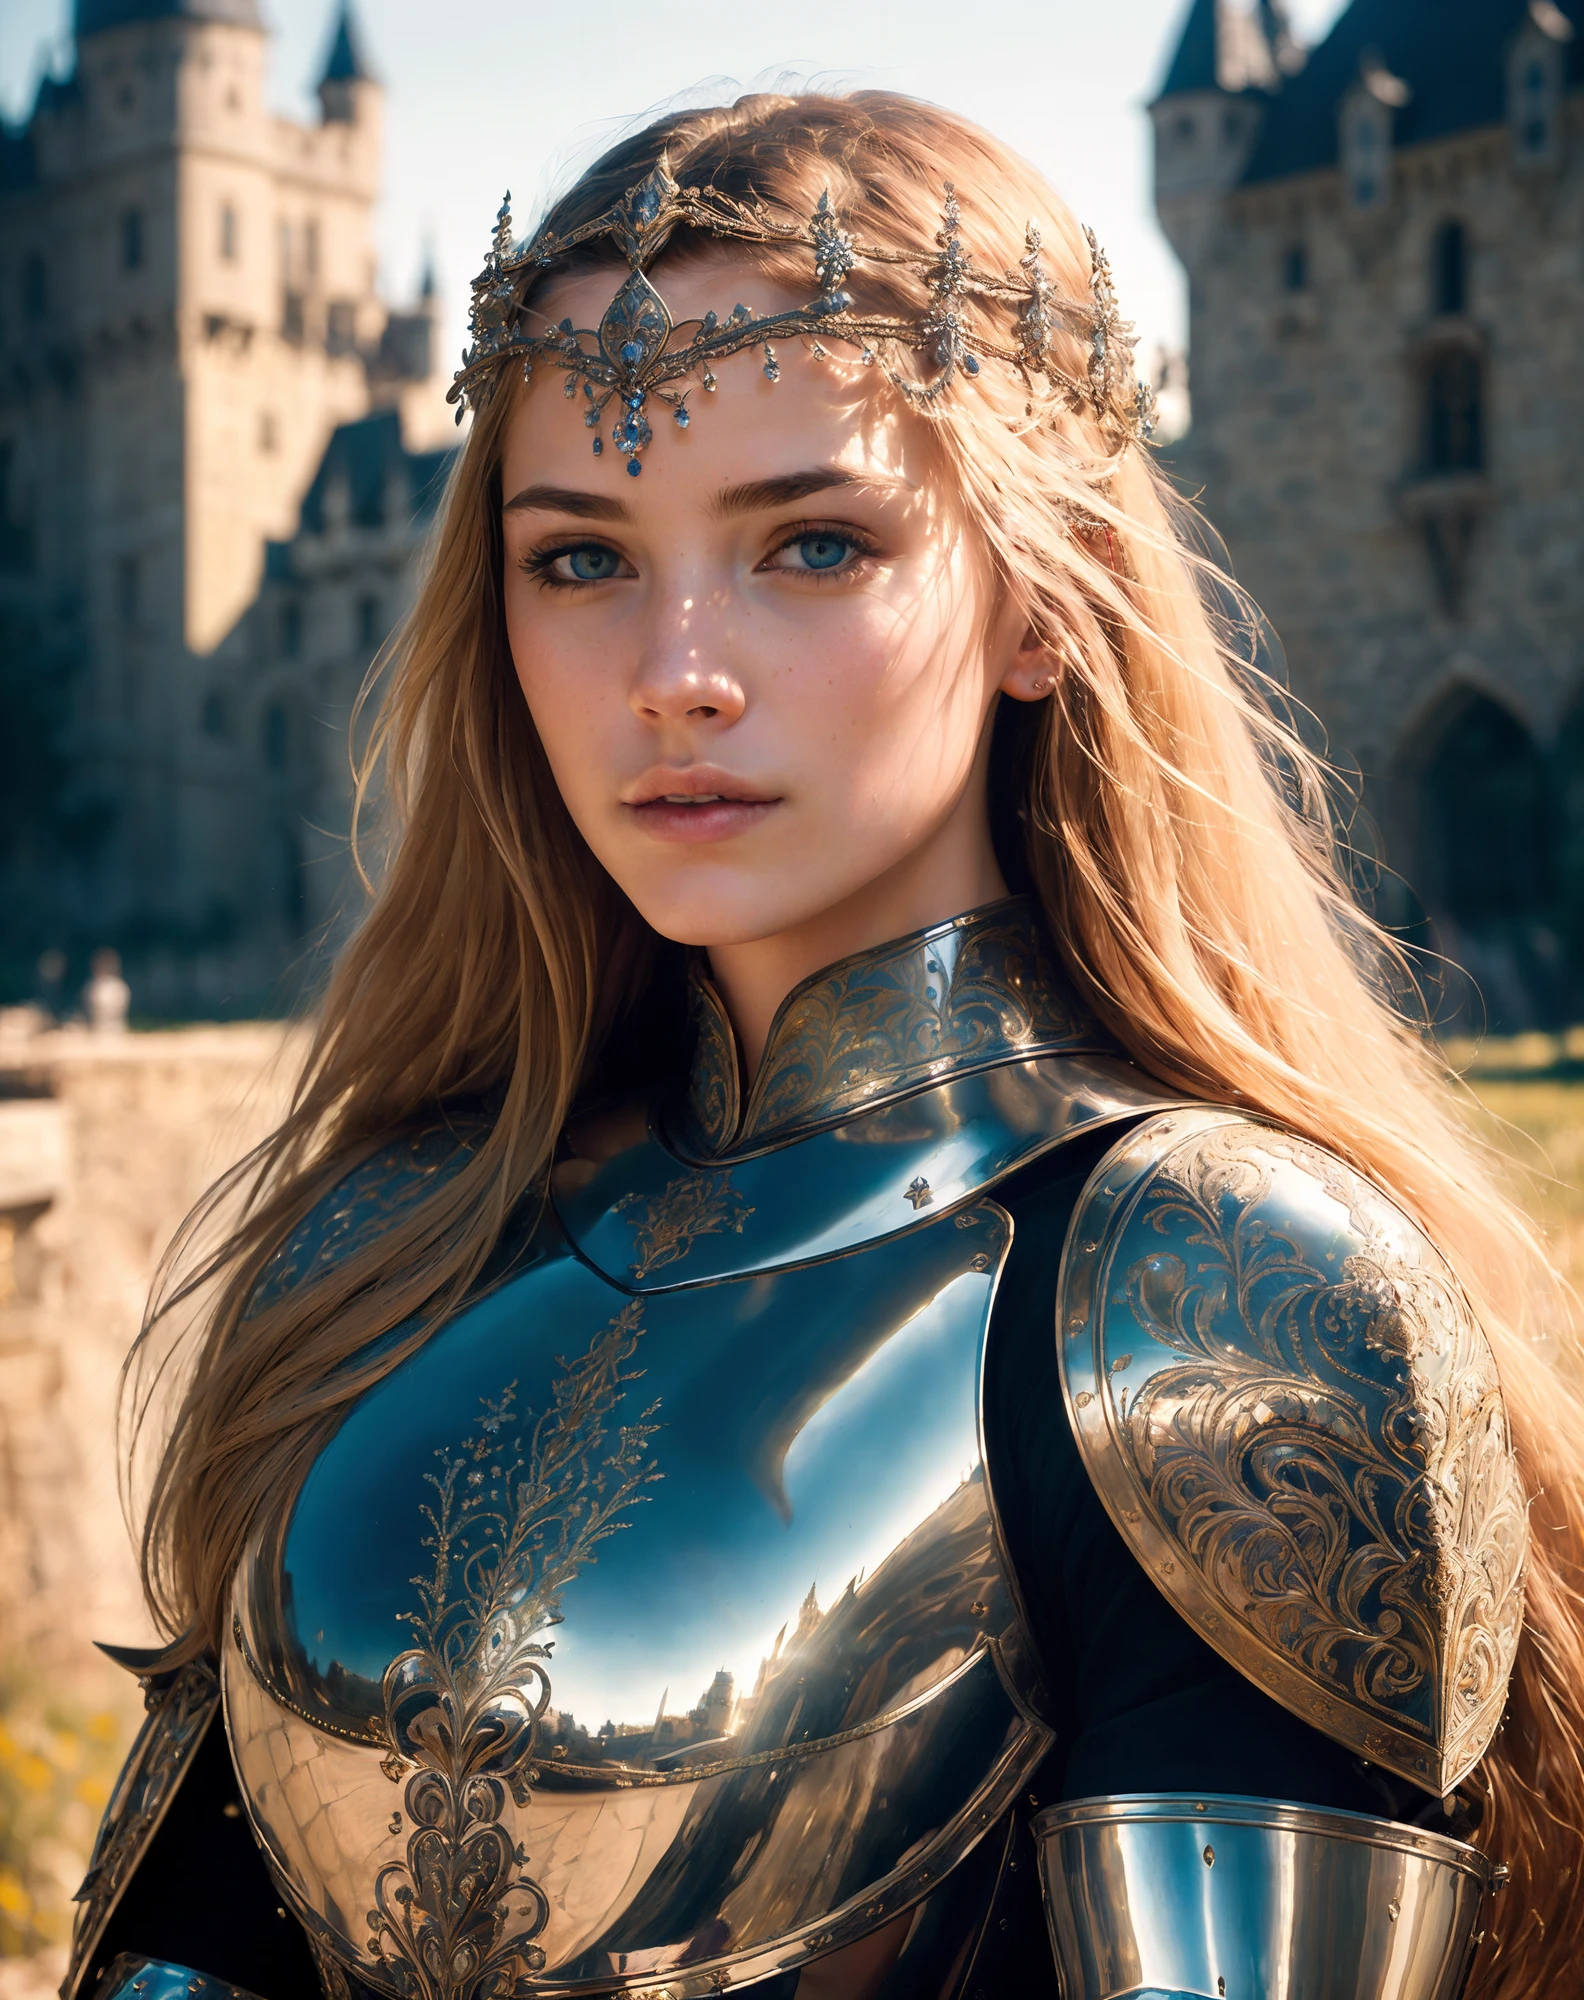 (傑作), (極為複雜:1.3), (實際的), 一個女孩的肖像, 世界上最美麗的, (中世紀盔甲), 金屬反射, 上半身, 戶外, 強烈的陽光, 遙遠的城堡, 一位令人驚嘆的女人的專業照片詳細, 銳利的焦點, 戲劇性, 得獎, 電影燈光, 辛烷渲染, 虛幻引擎, 體積 dtx, (photo實際的:1.5),